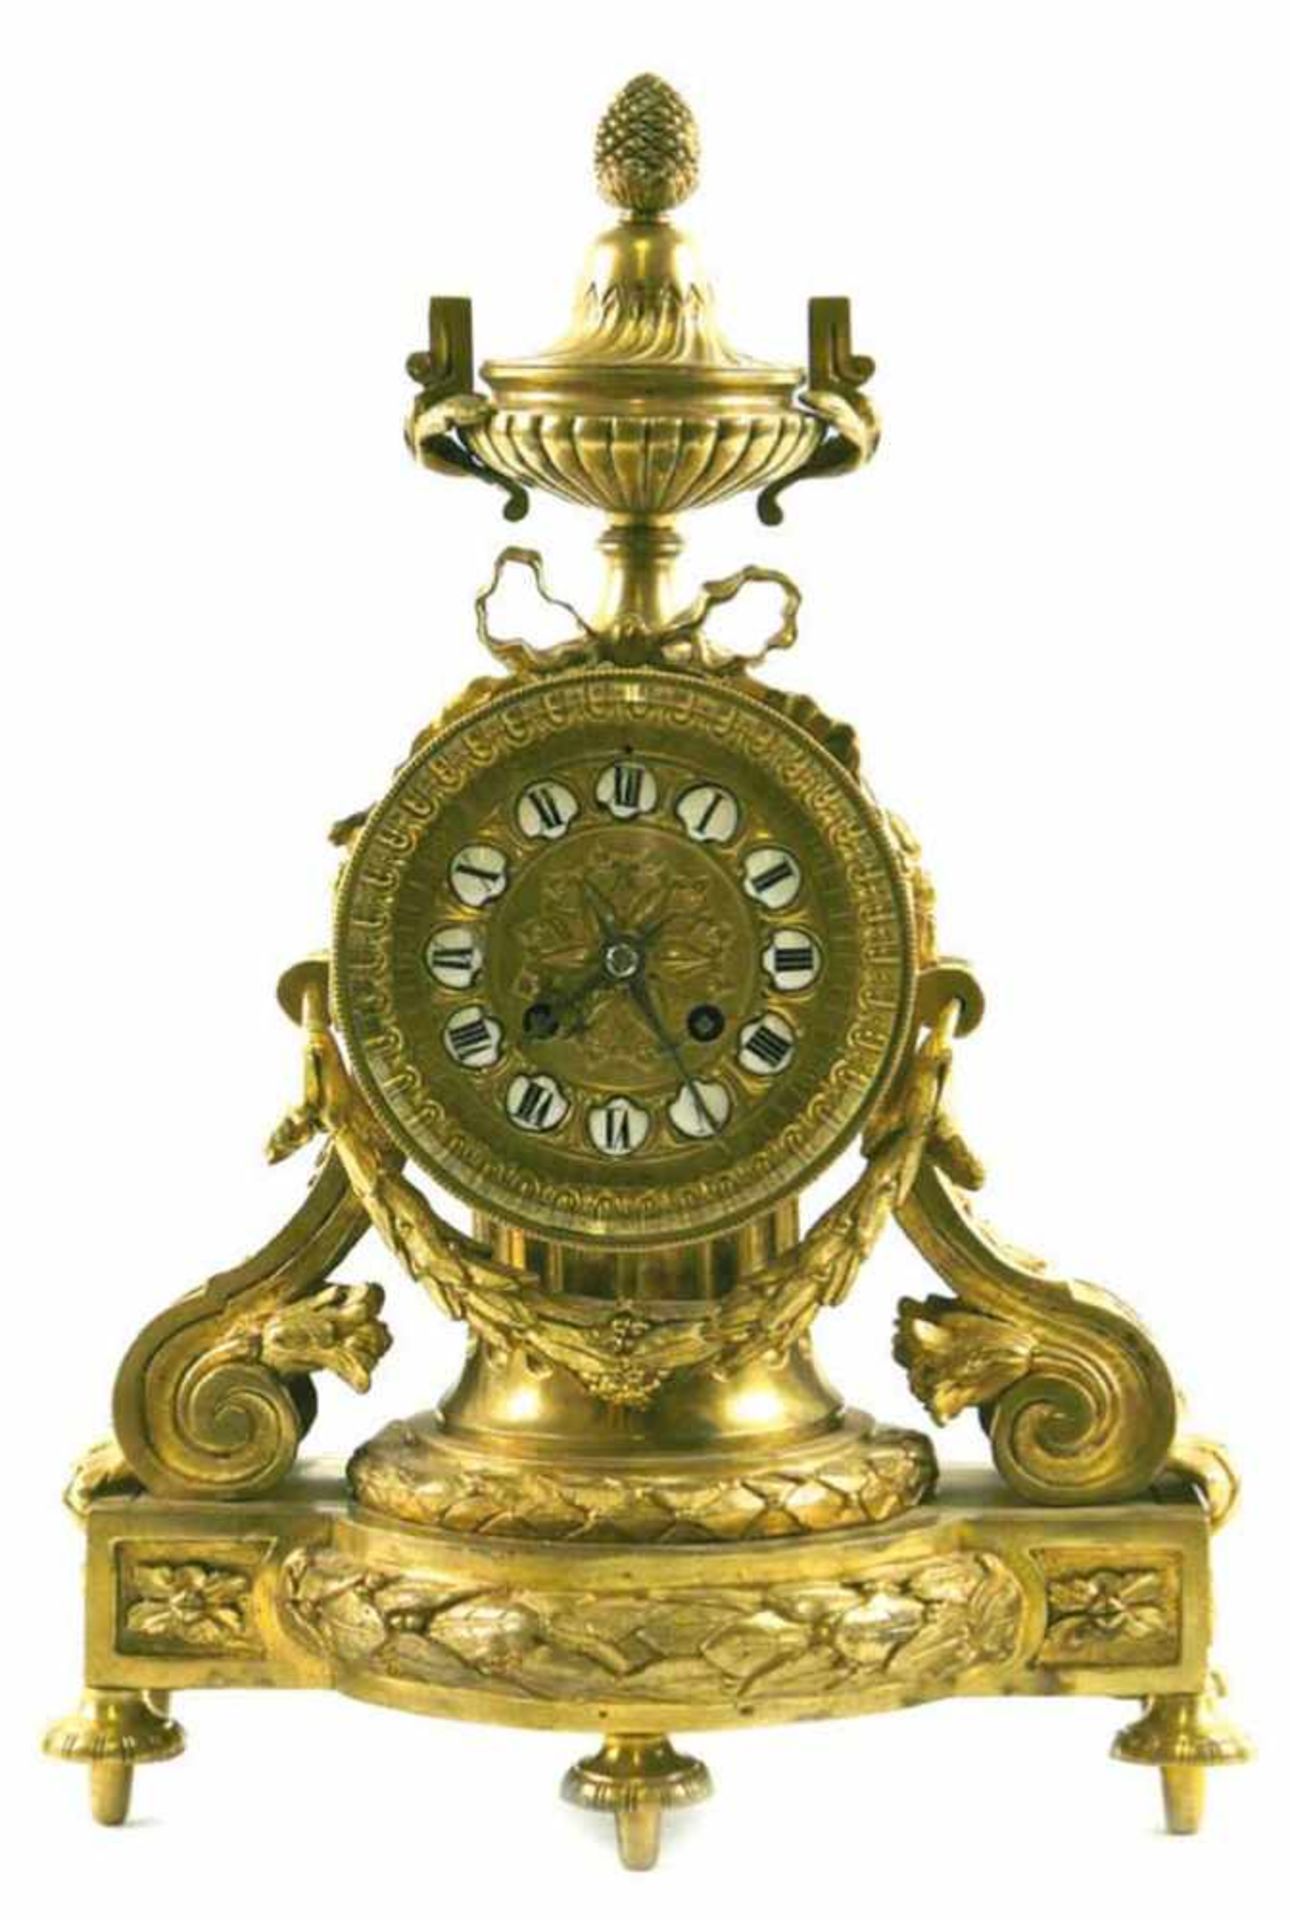 Pendule, um 1850, vergoldes, verziertes Messinggehäuse mit Festondekor u. Amphore alsBekrönung,